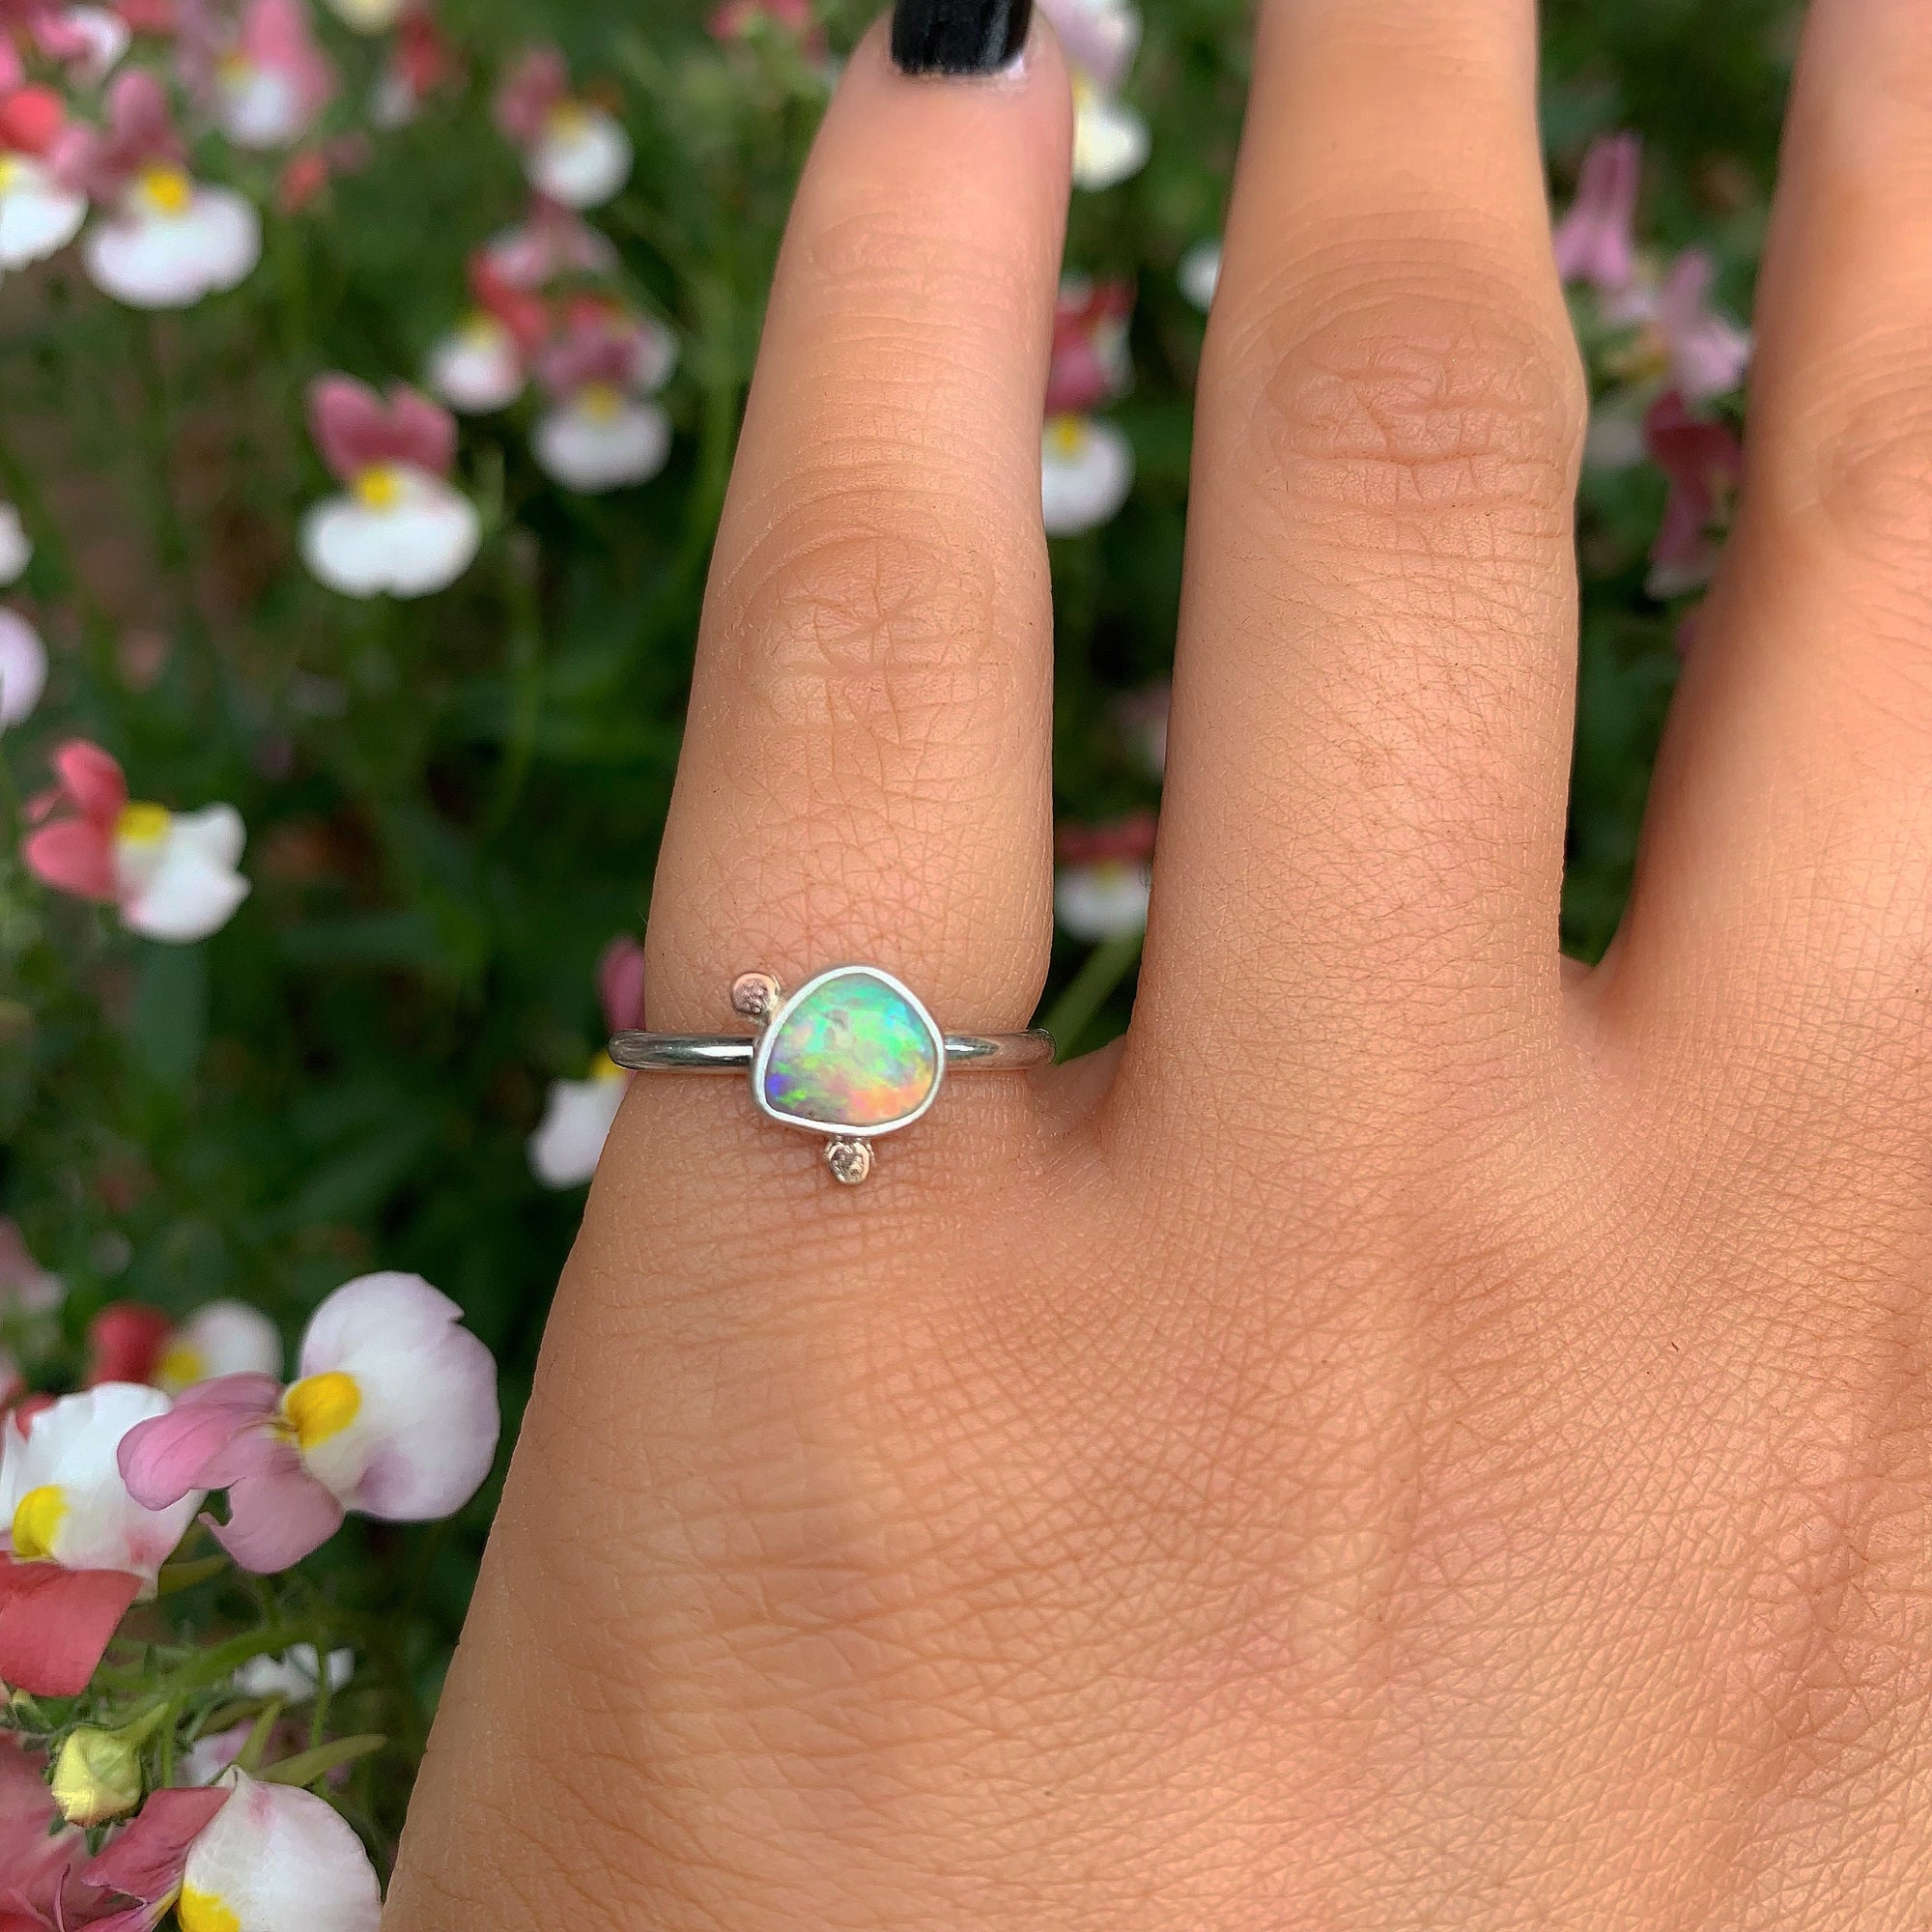 Australian Crystal Opal Ring - Size 4 